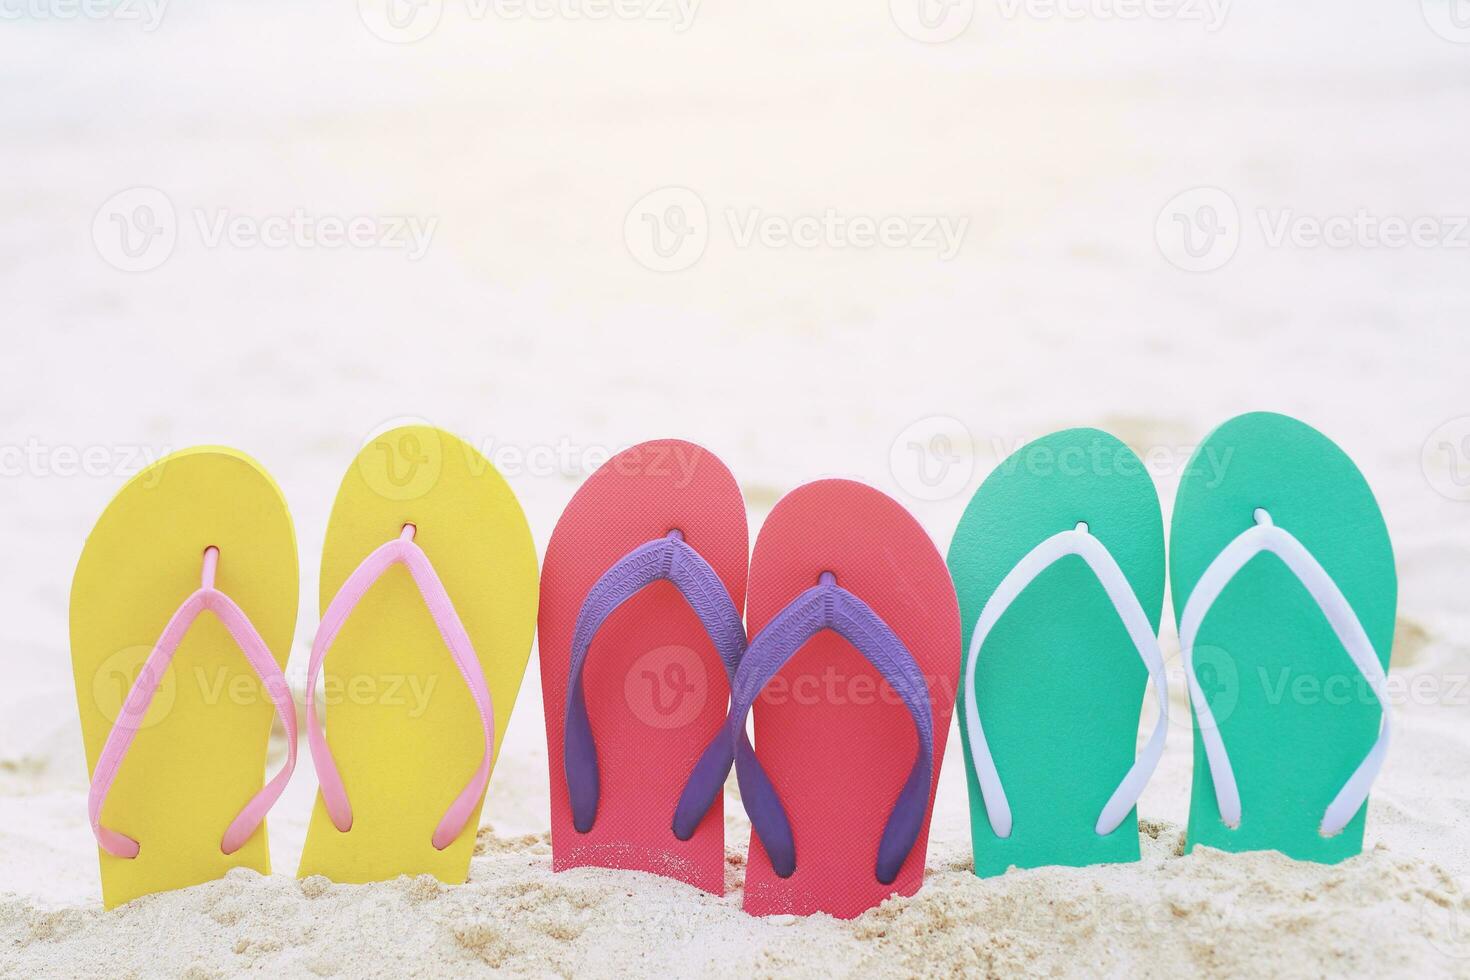 mer sur la plage empreinte de personnes sur le sable et pantoufle de pieds en sandales chaussures sur fond de sable de plage. concept de vacances de voyage. photo